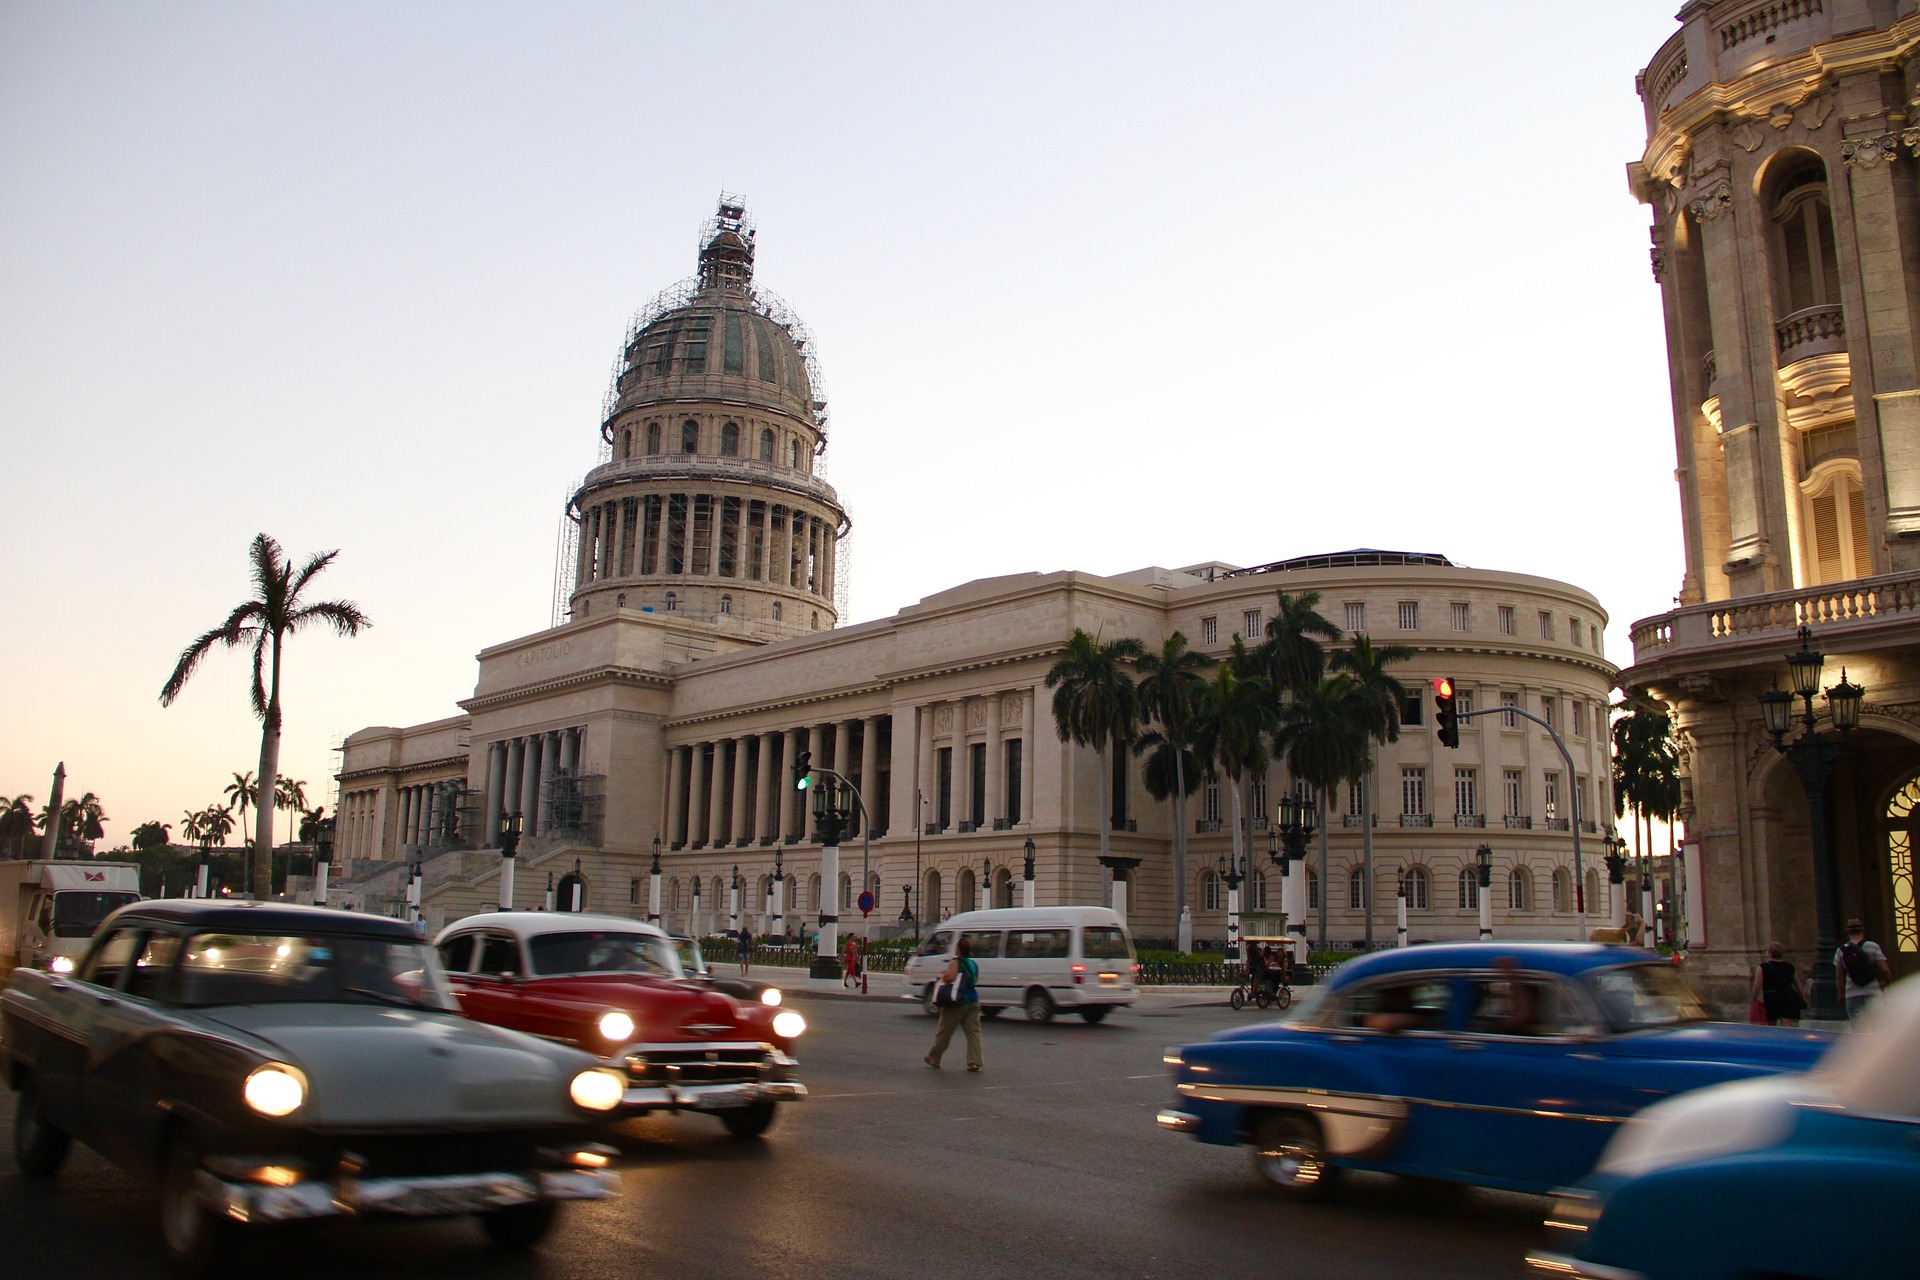 Ville Cuba